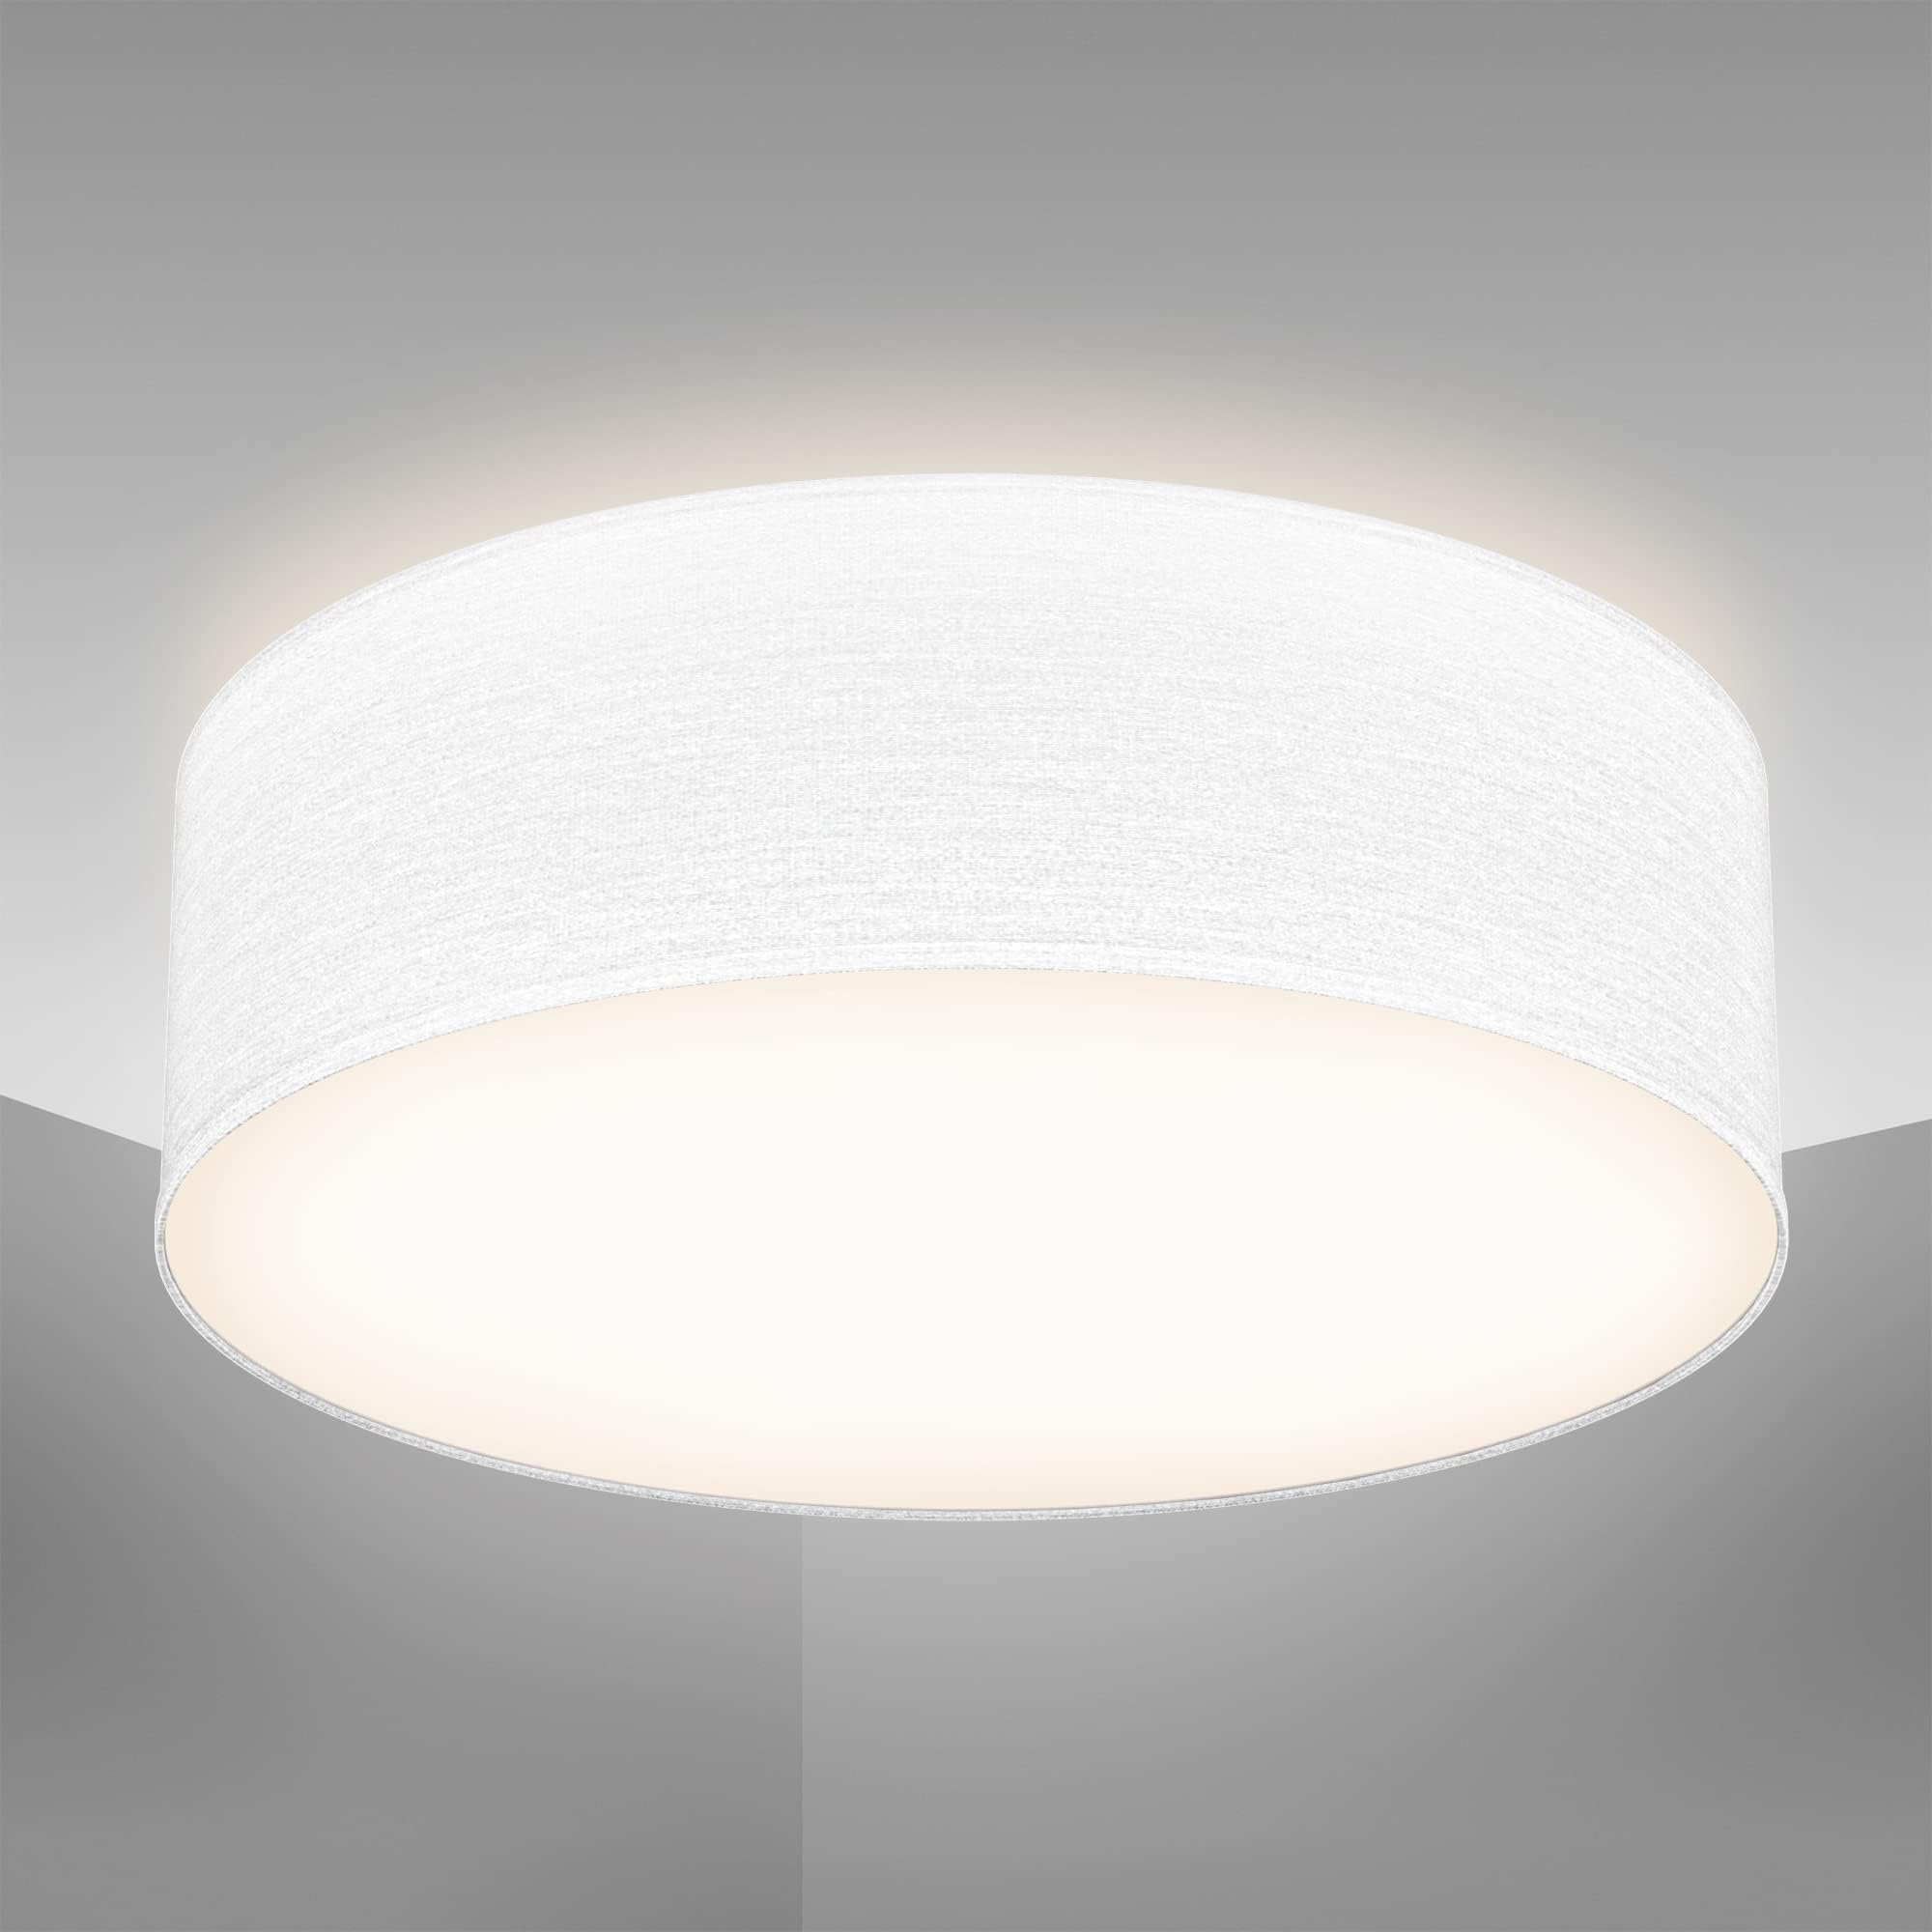 B.K.Licht - Deckenlampe mit Lampenschirm aus Stoff, E27 Fassung, max. 40 Watt, Deckenleuchte, Lampe, Wohnzimmerlampe, Schlafzimmerlampe, Küchenlampe, Deckenbeleuchtung, 30x10 cm, Weiß